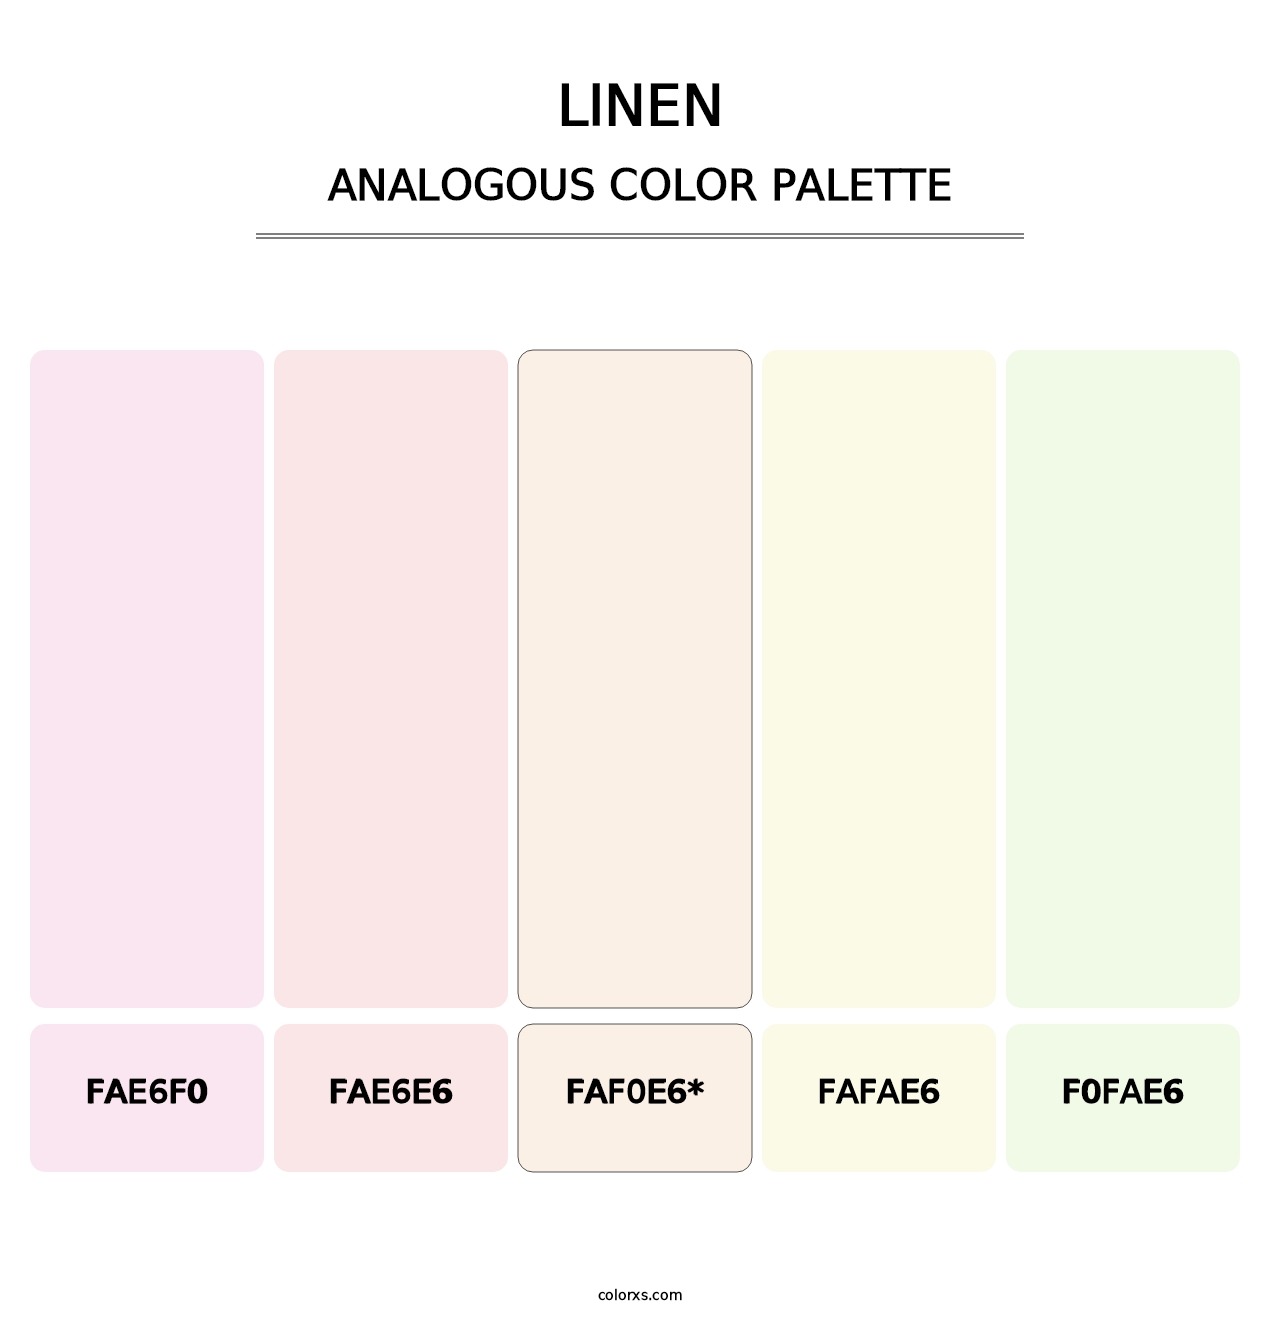 Linen - Analogous Color Palette